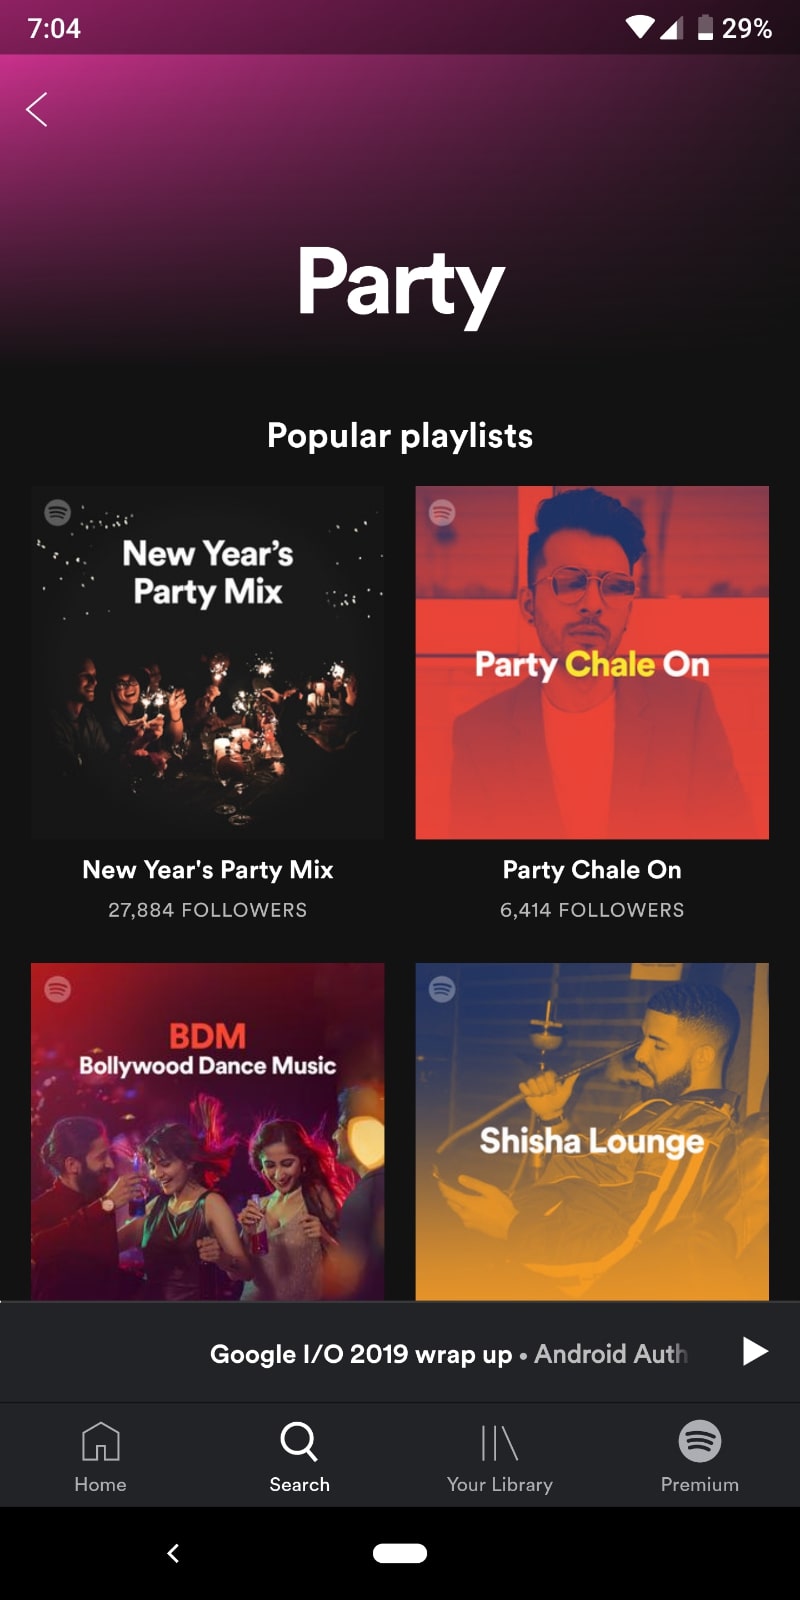 spotify india popular playlists